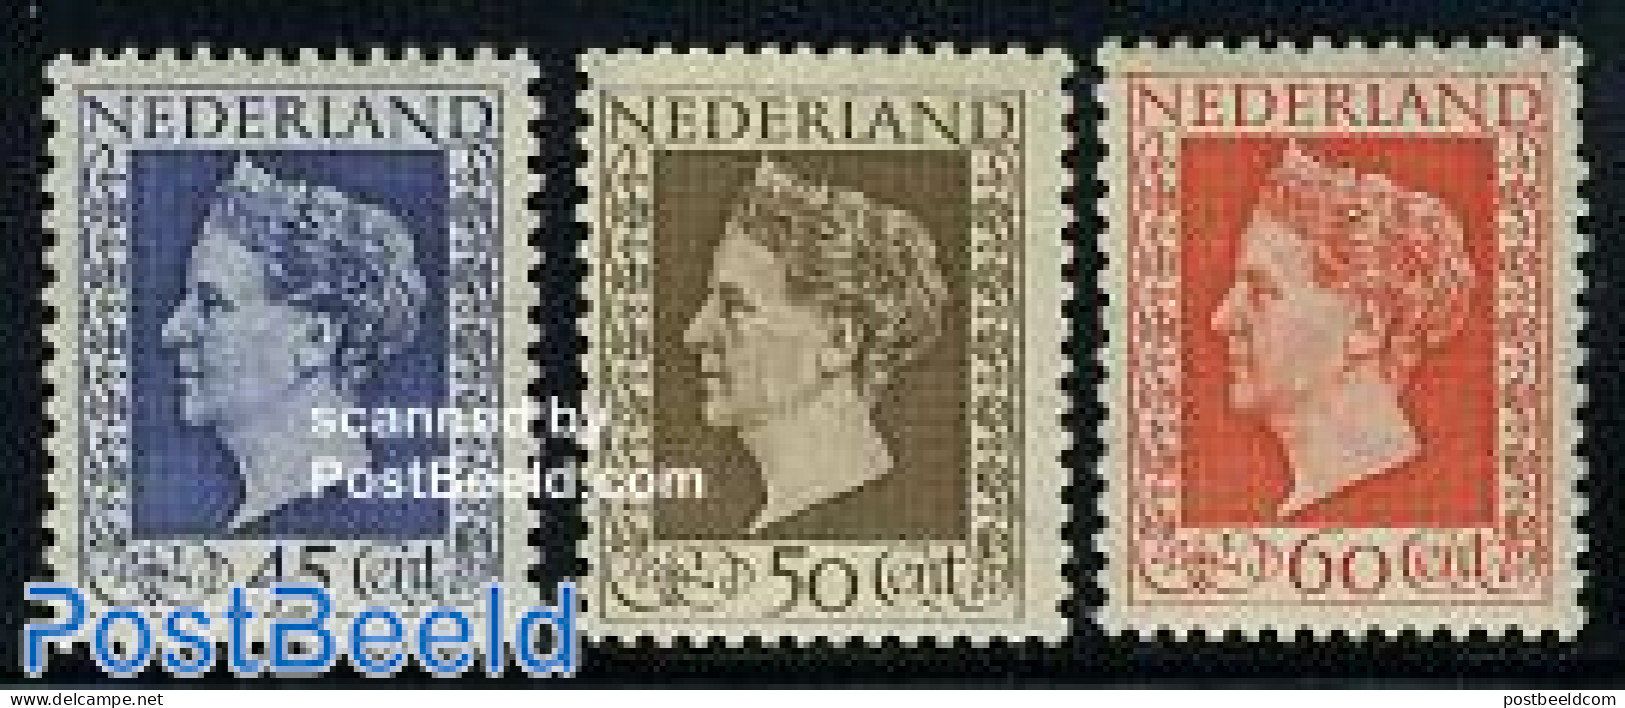 Netherlands 1948 Definitives 3v, Mint NH - Unused Stamps